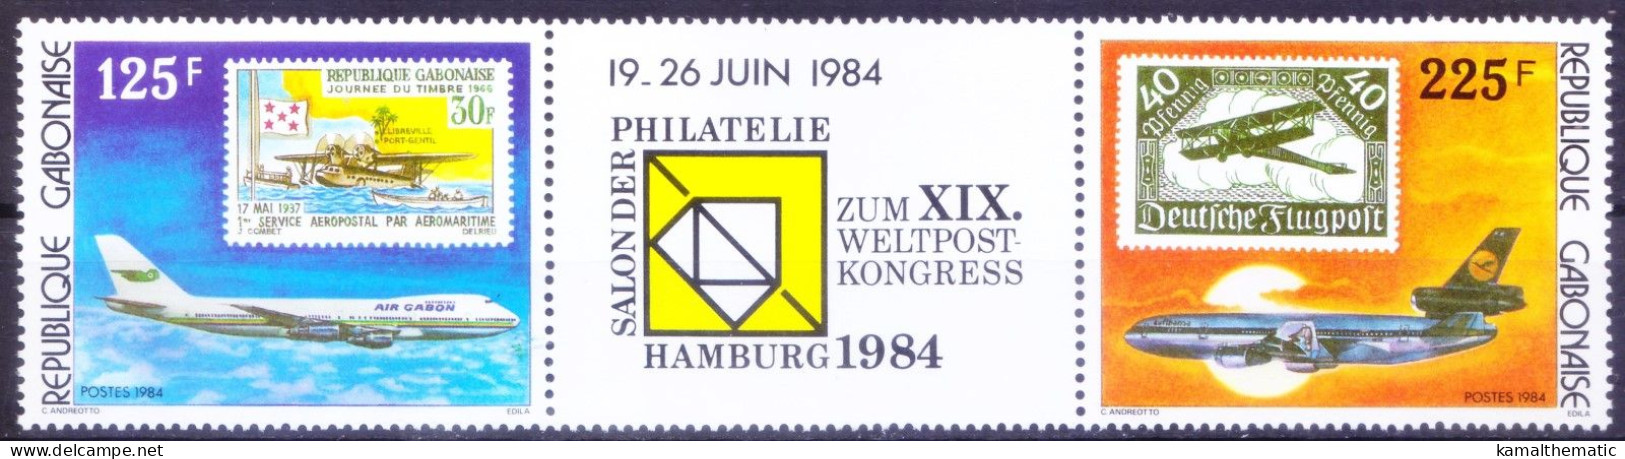 Gabon 1984 MNH 2v + Label, World UPU Congress, Airplane - - UPU (Universal Postal Union)